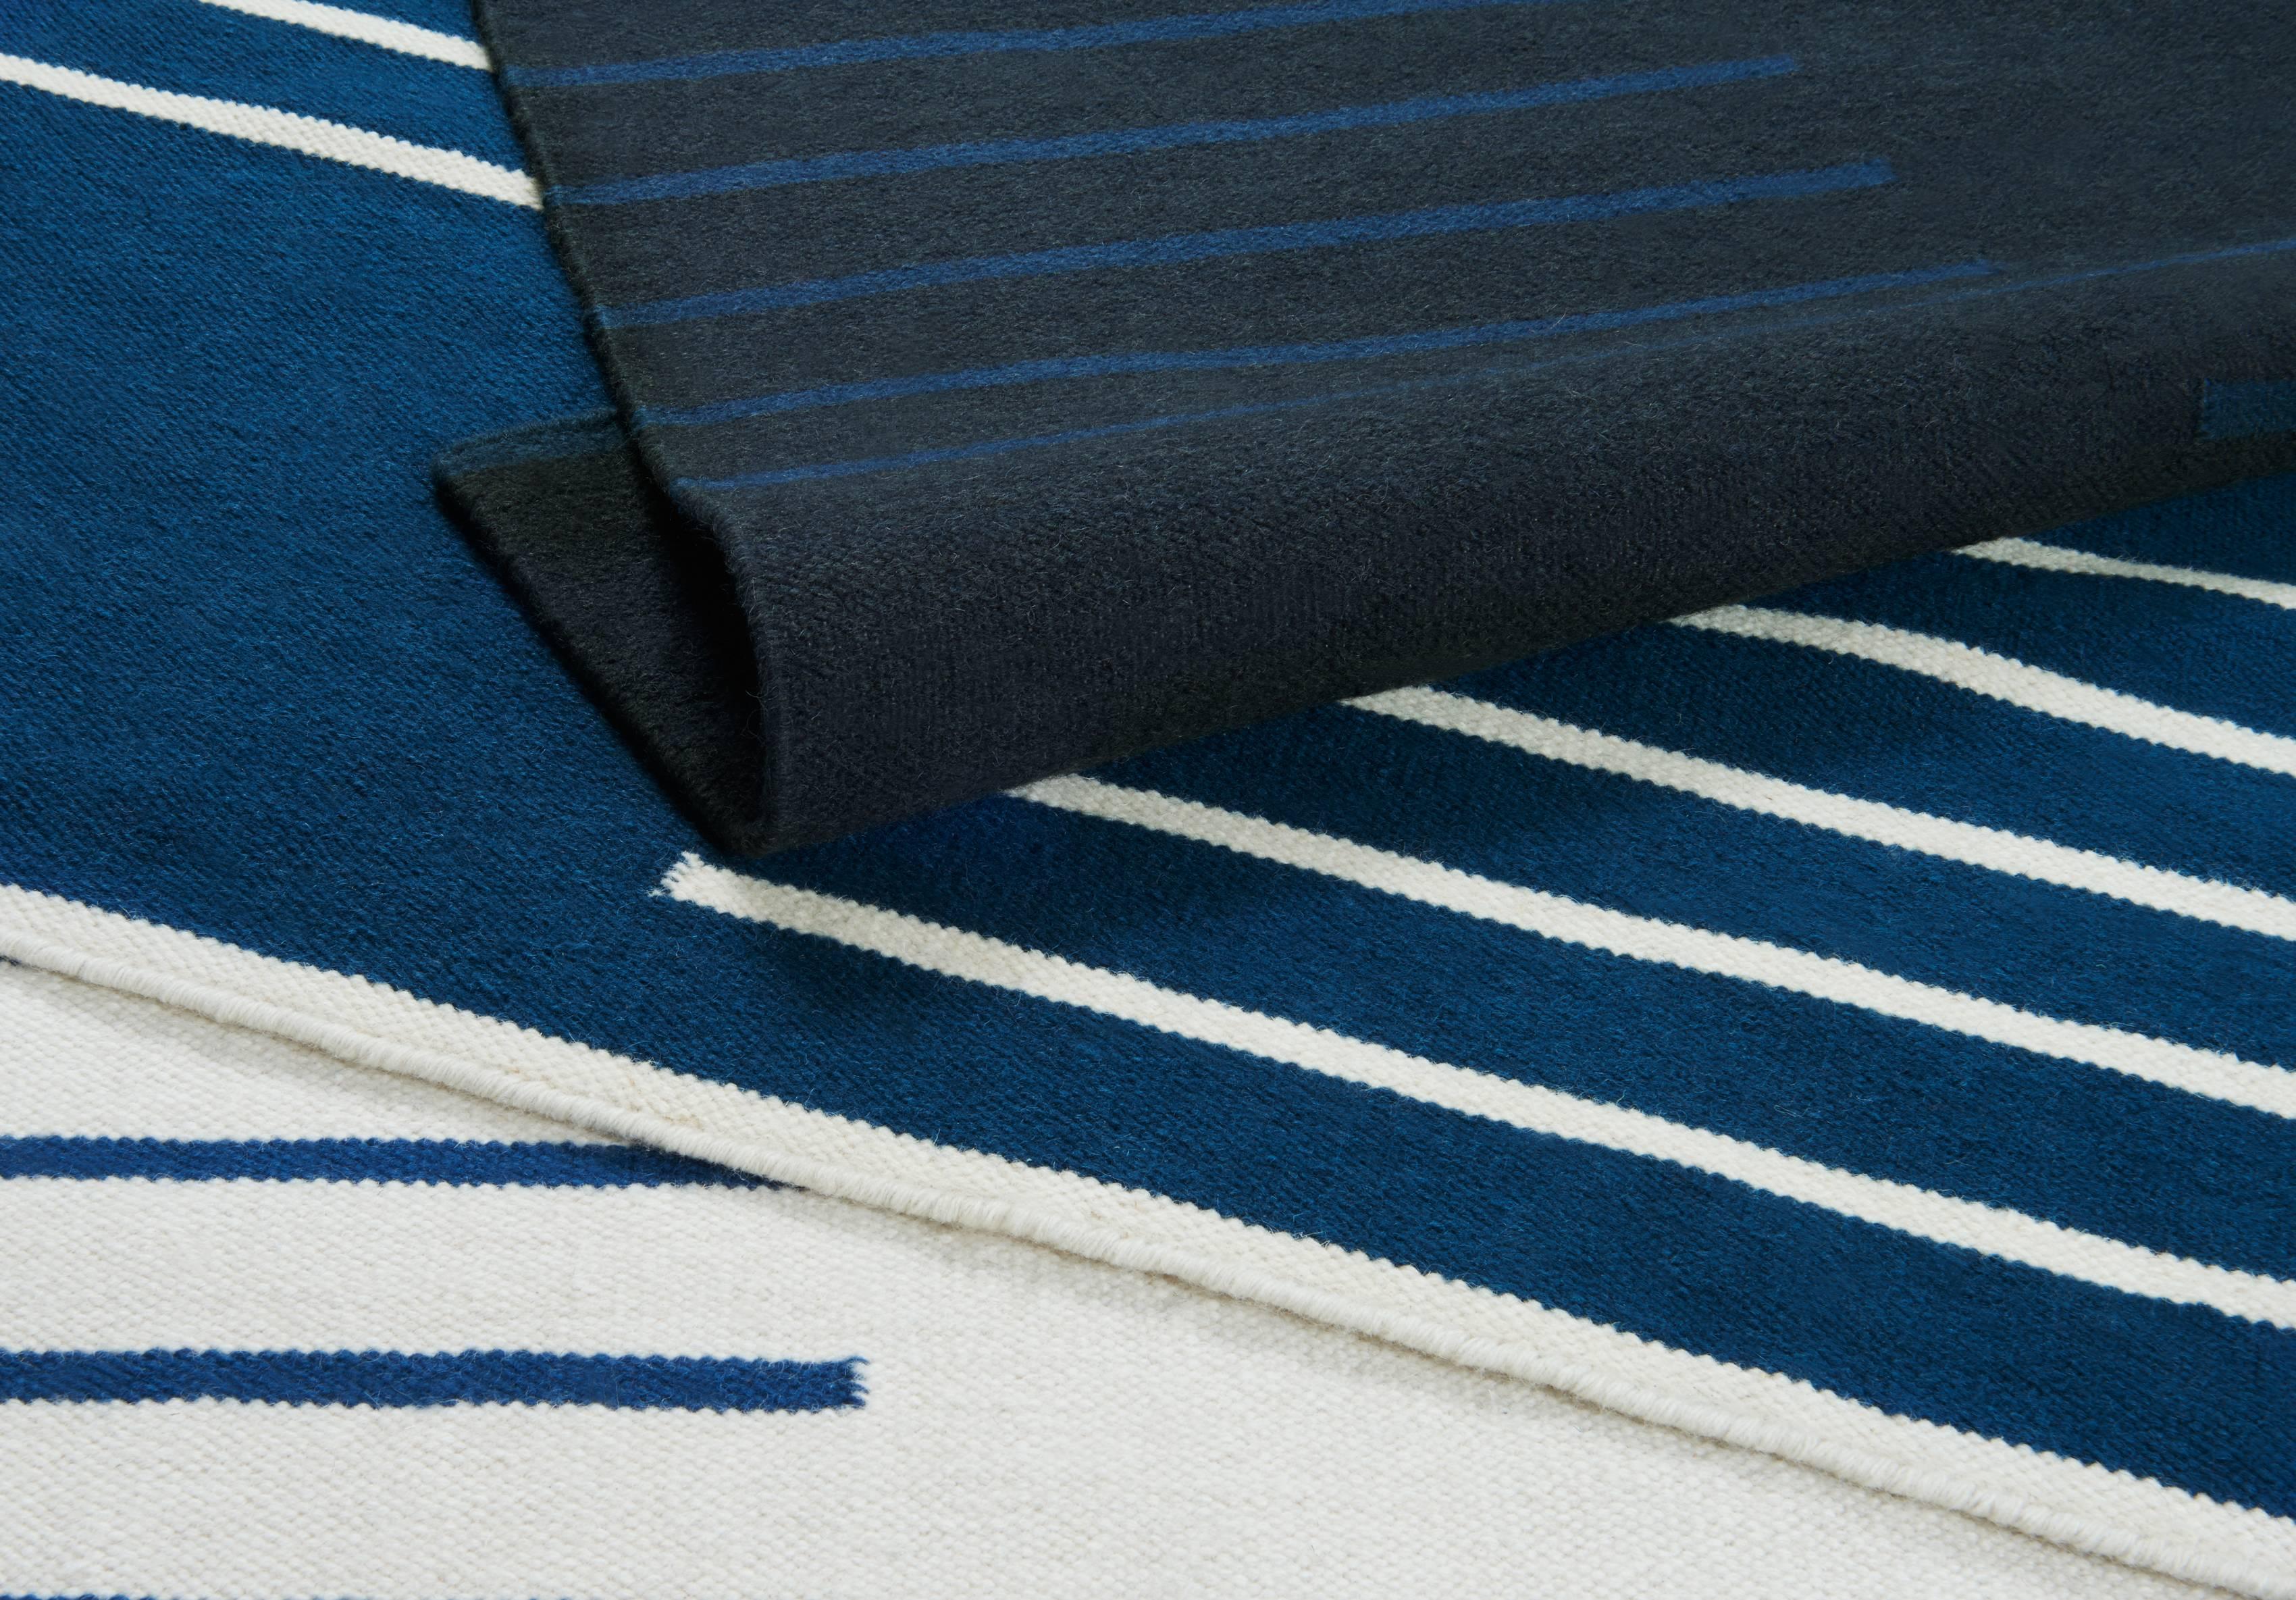 Classic Cream/Blue est un tapis dhurrie/kilim moderne au design scandinave. Il est disponible en différentes tailles - voir les options de personnalisation ci-dessous.

Un design traditionnel inspiré des motifs scandinaves classiques. Le tapis est